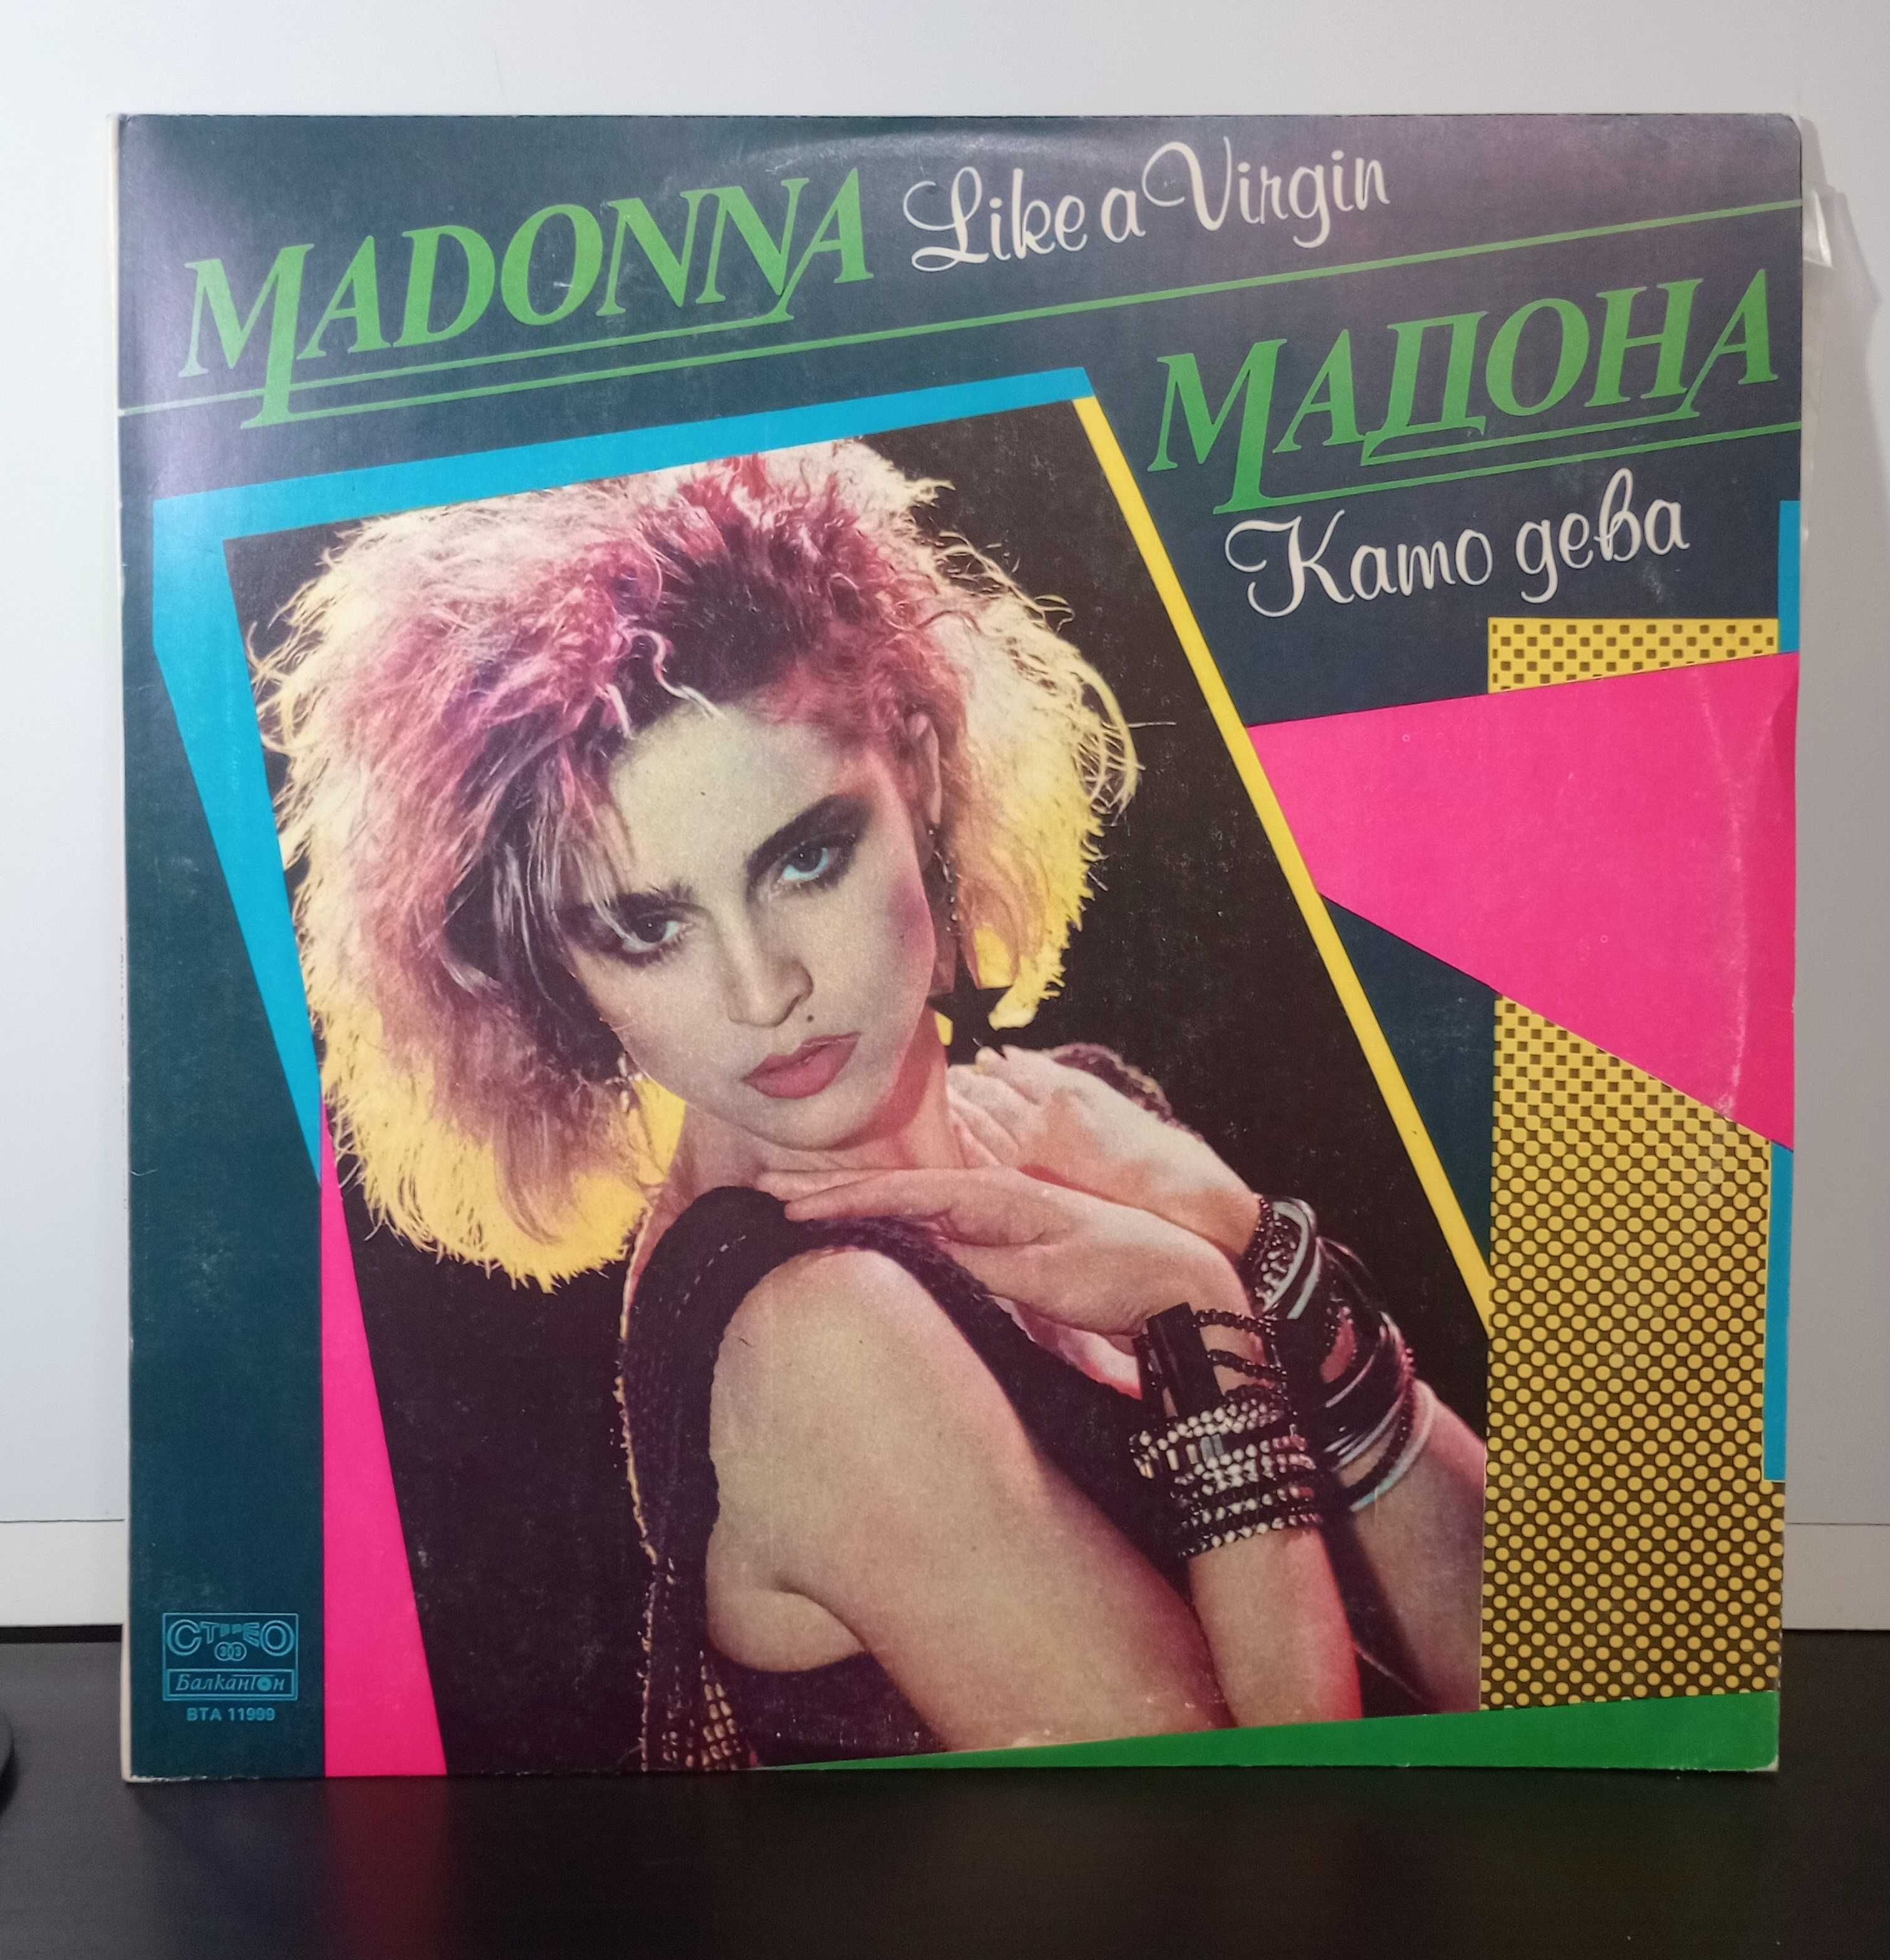 Продаются пластинки одним лотом -4шт.Genesis, Madonna...EX